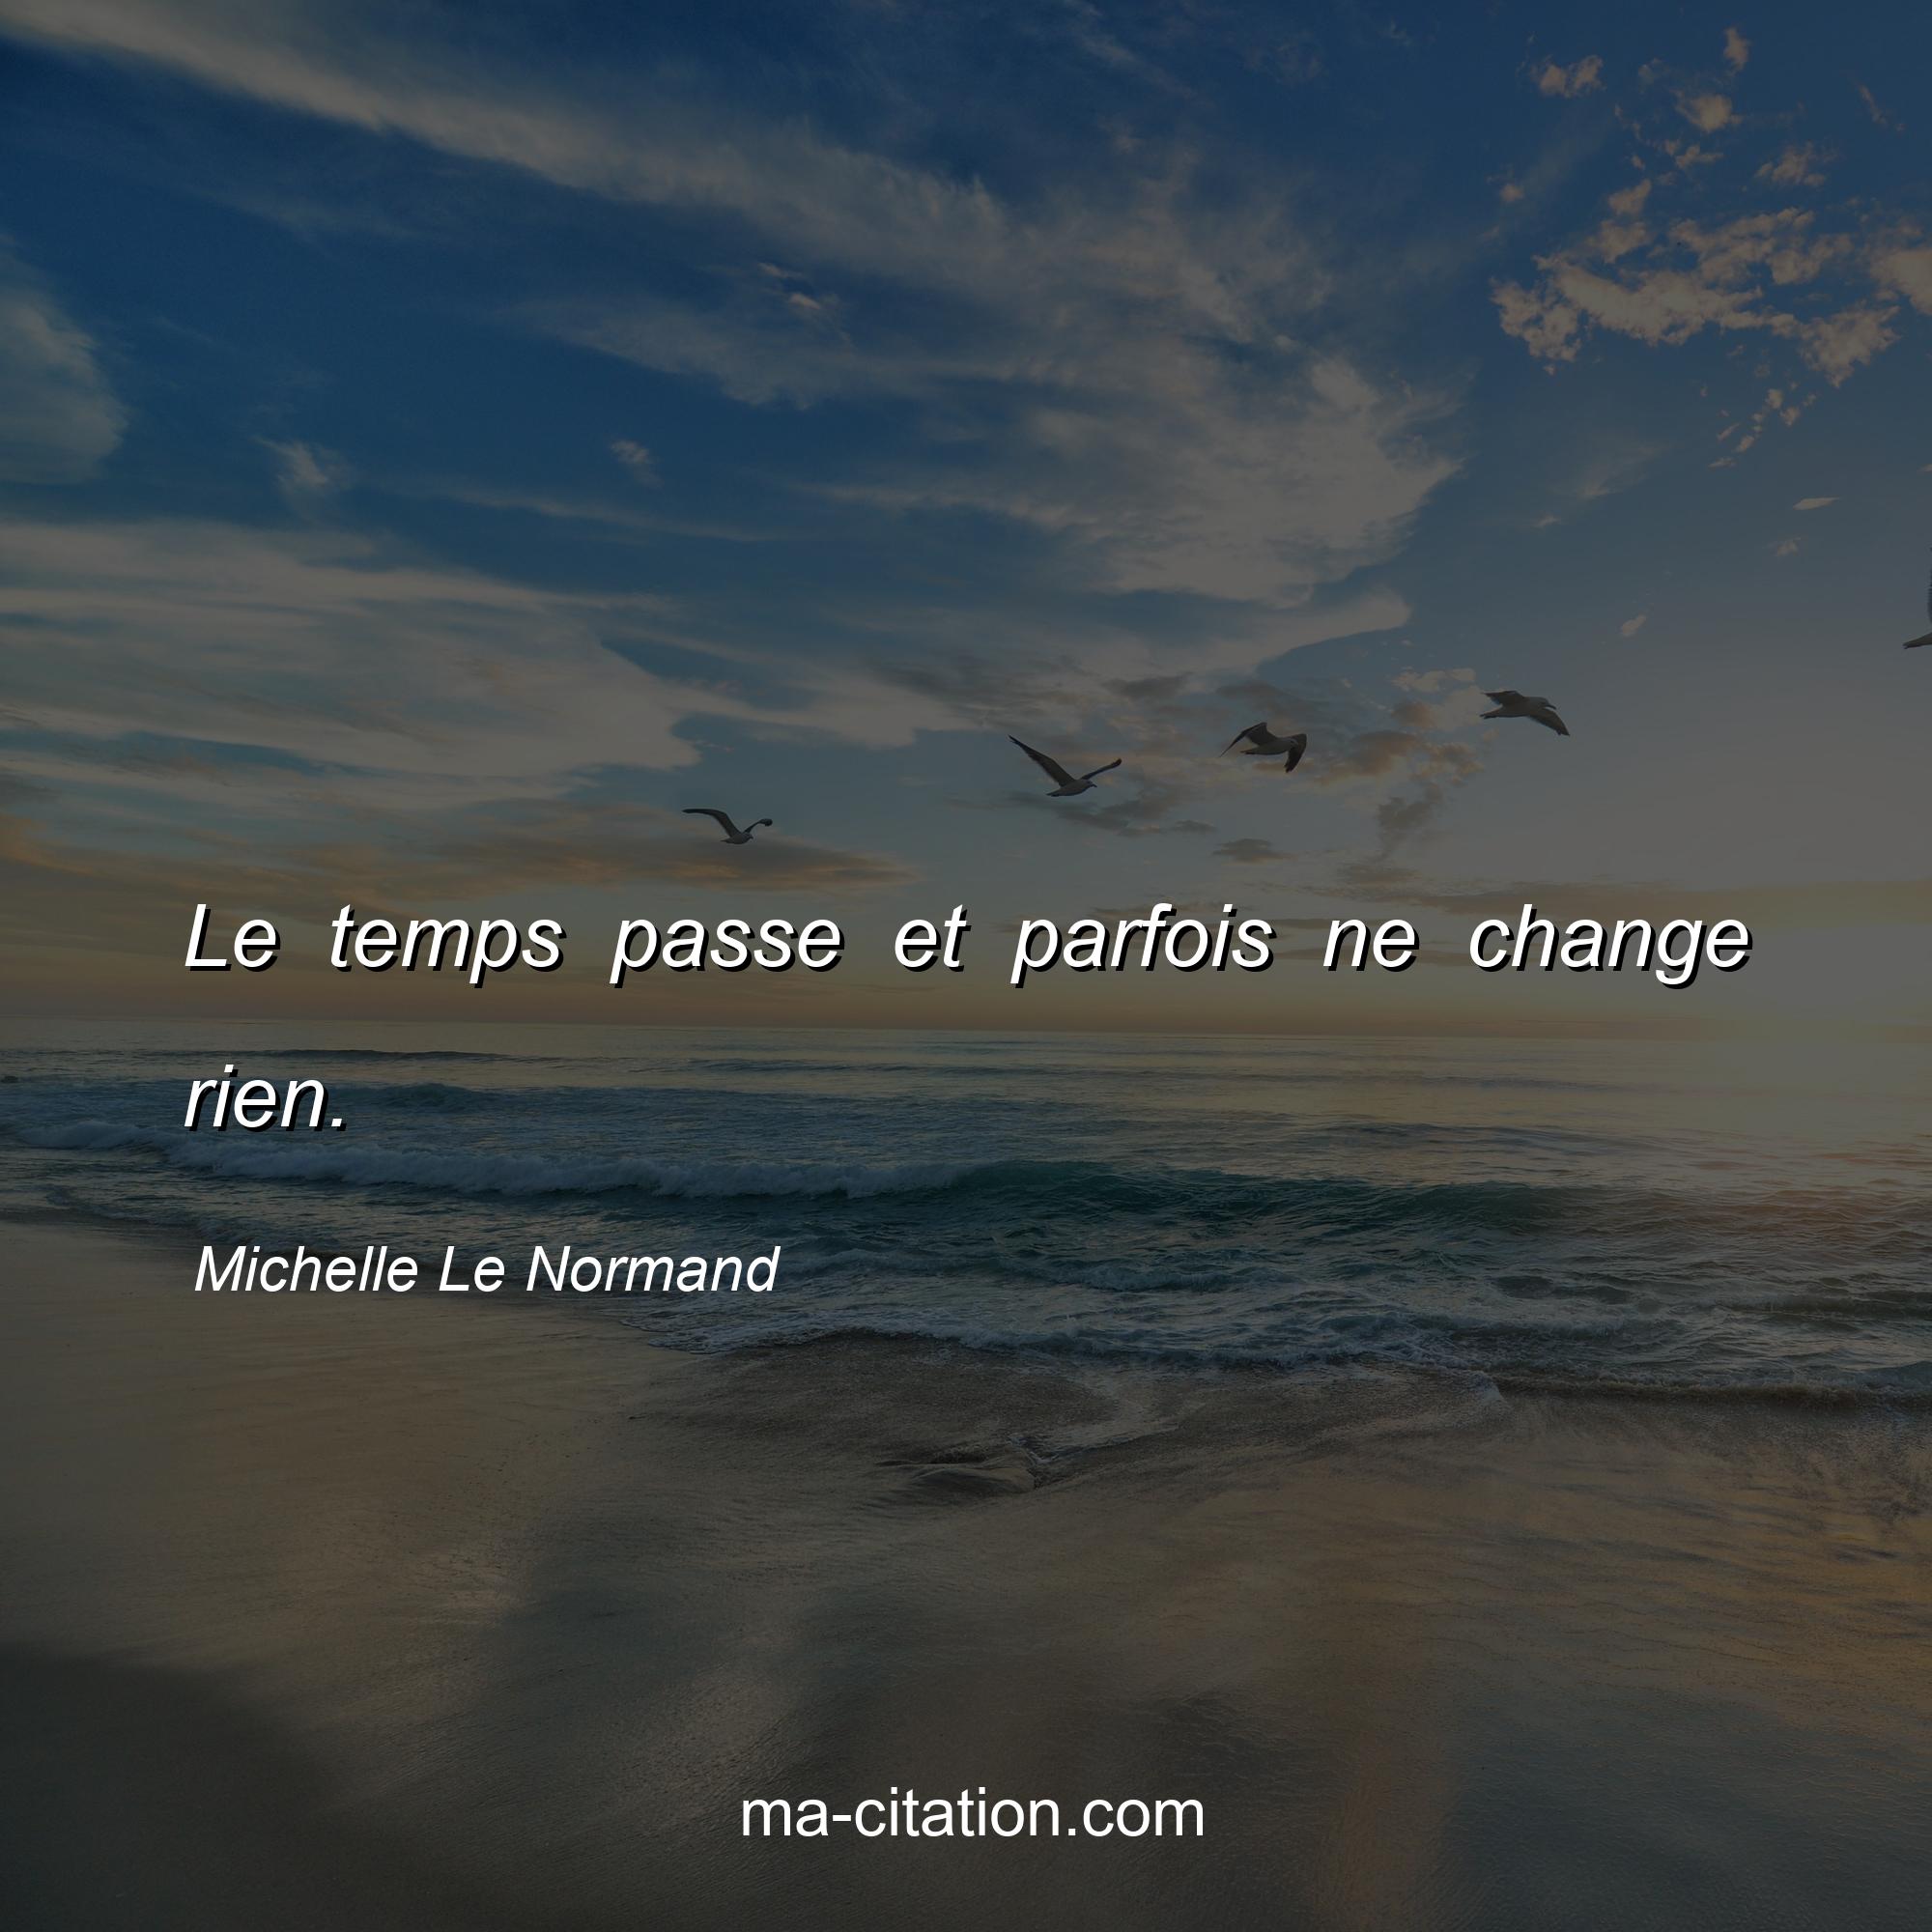 Michelle Le Normand : Le temps passe et parfois ne change rien.